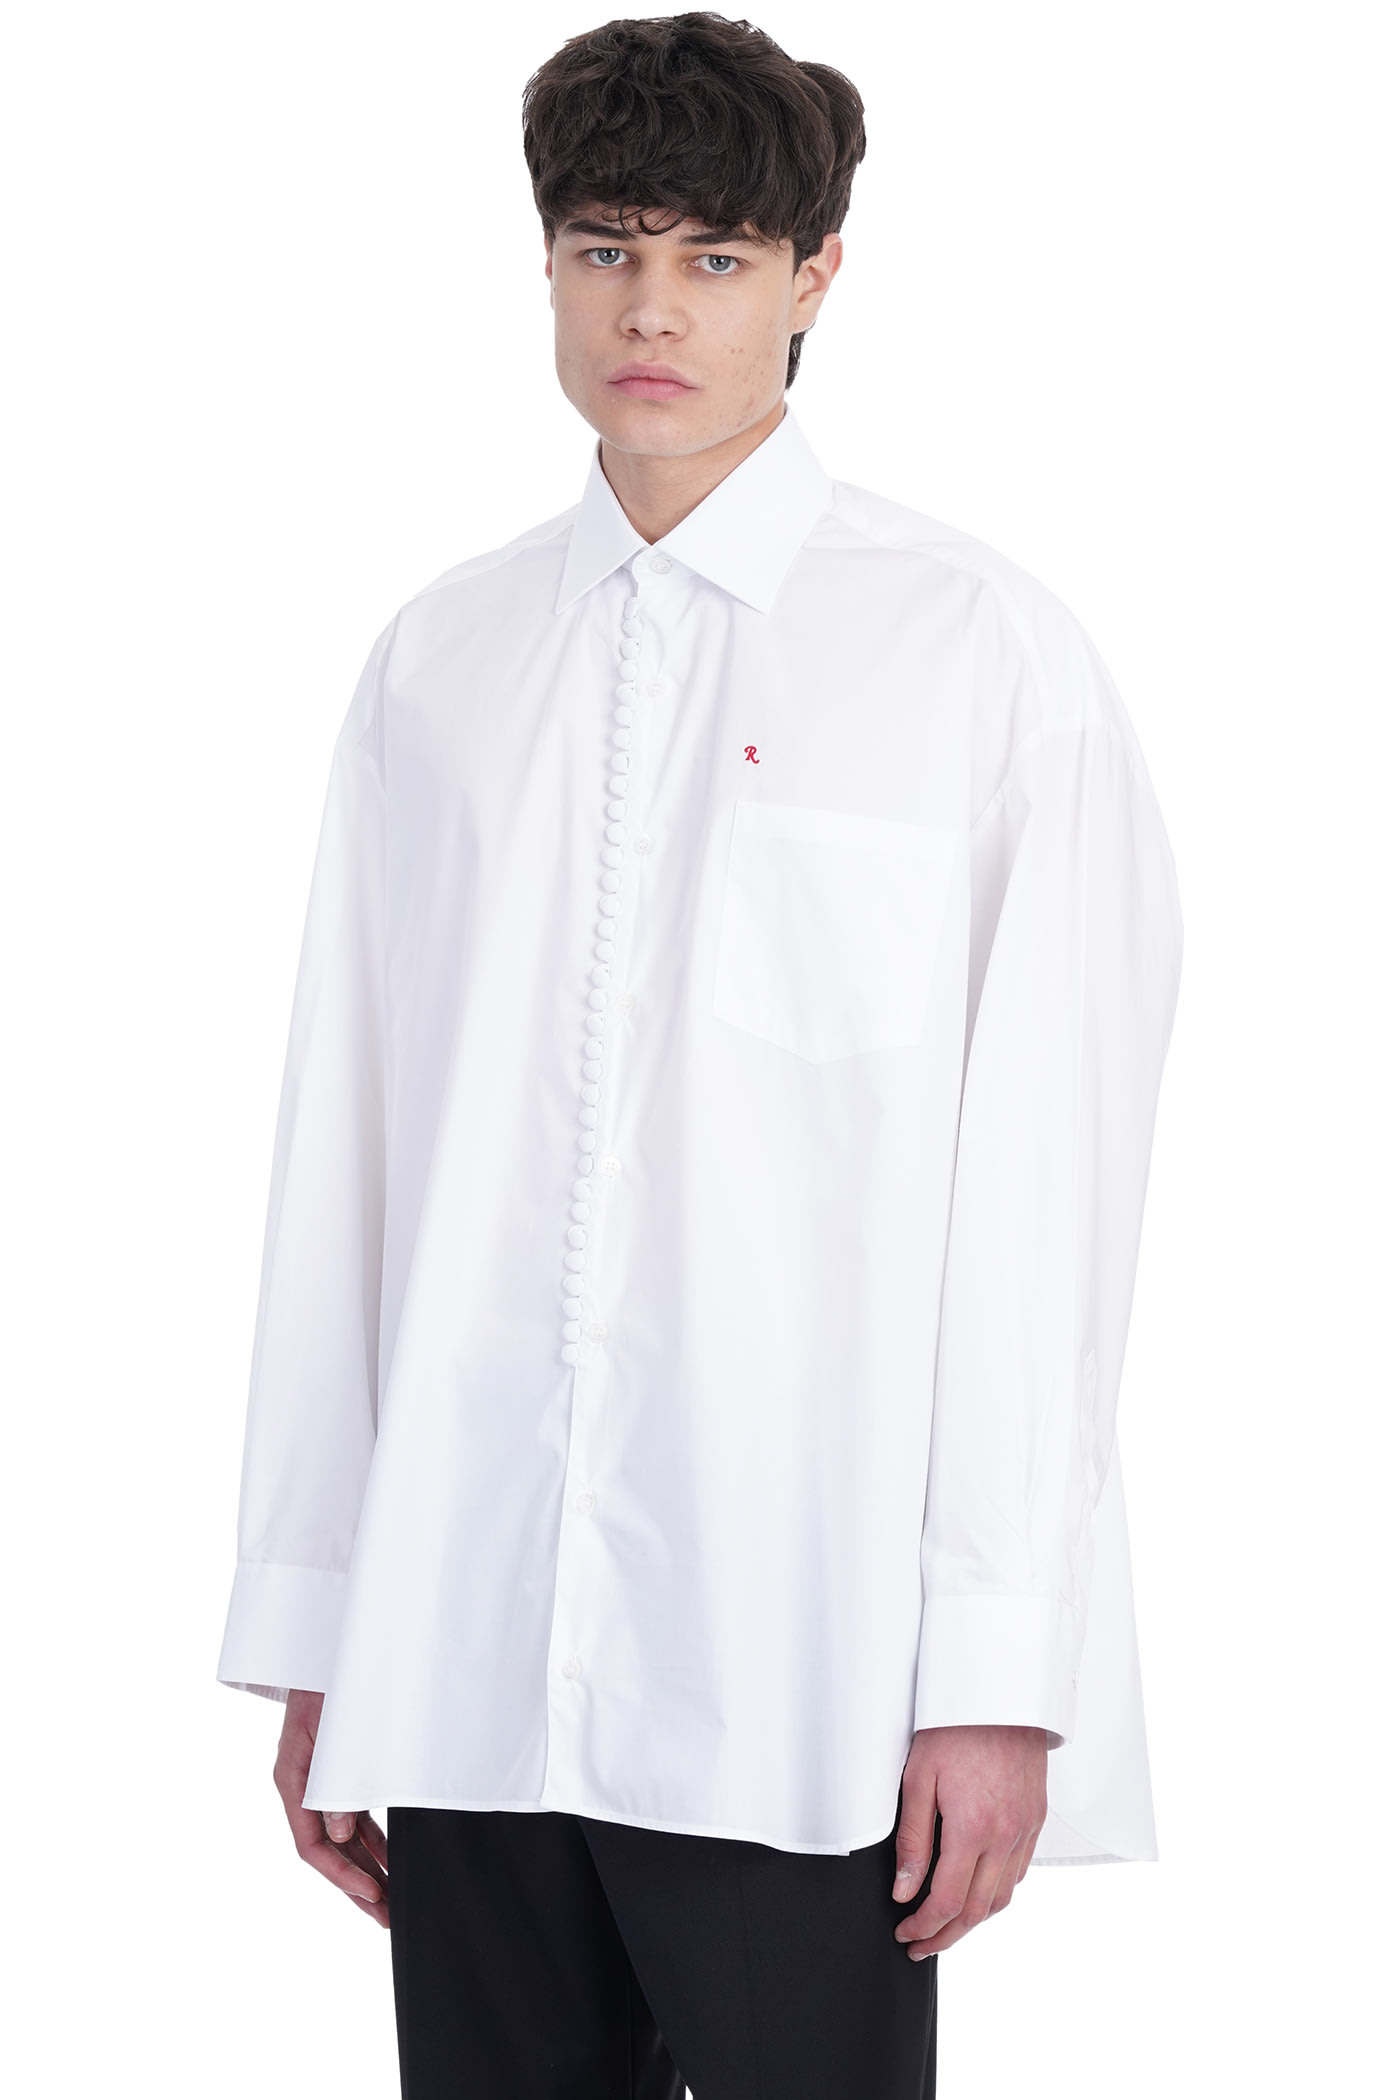 Raf Simons Shirt In White Cotton